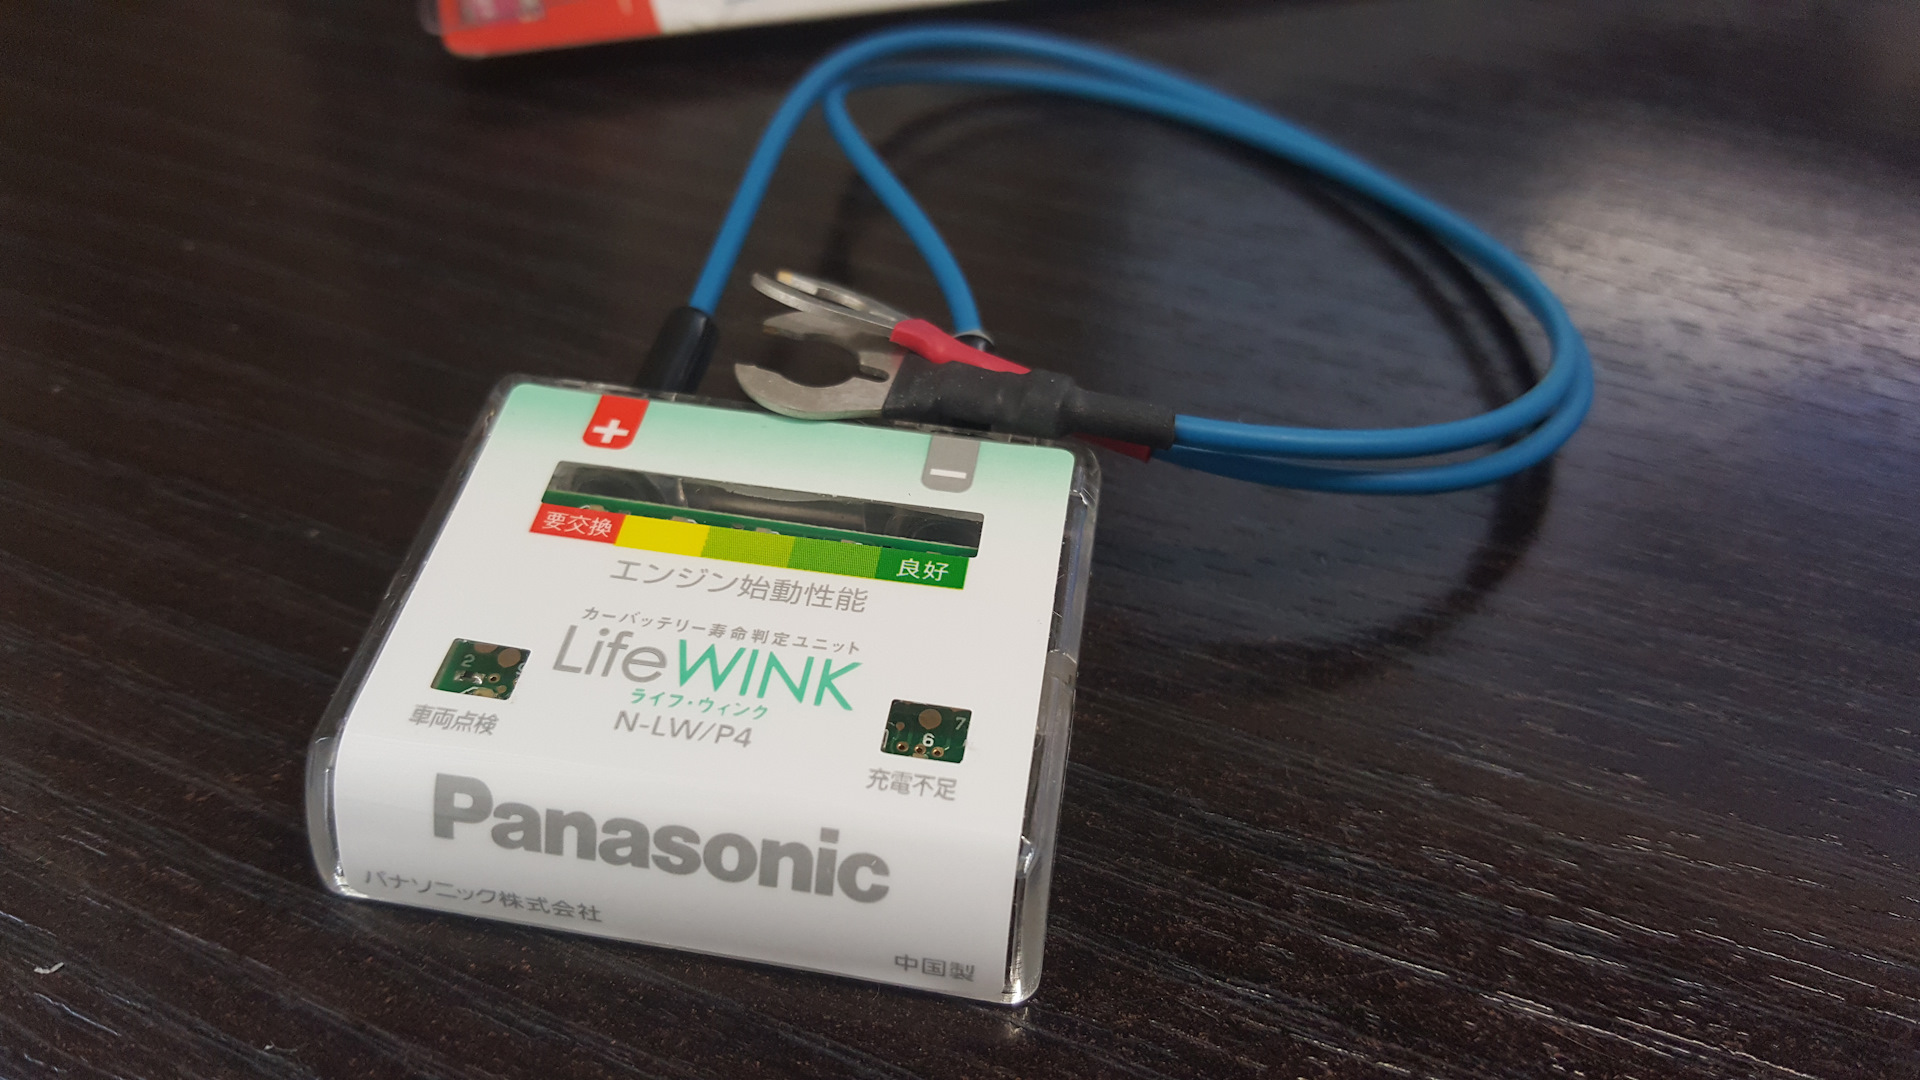 Интеллектуальный блок. Life wink Panasonic. Датчик LIFEWINK. Panasonic Life телефон.